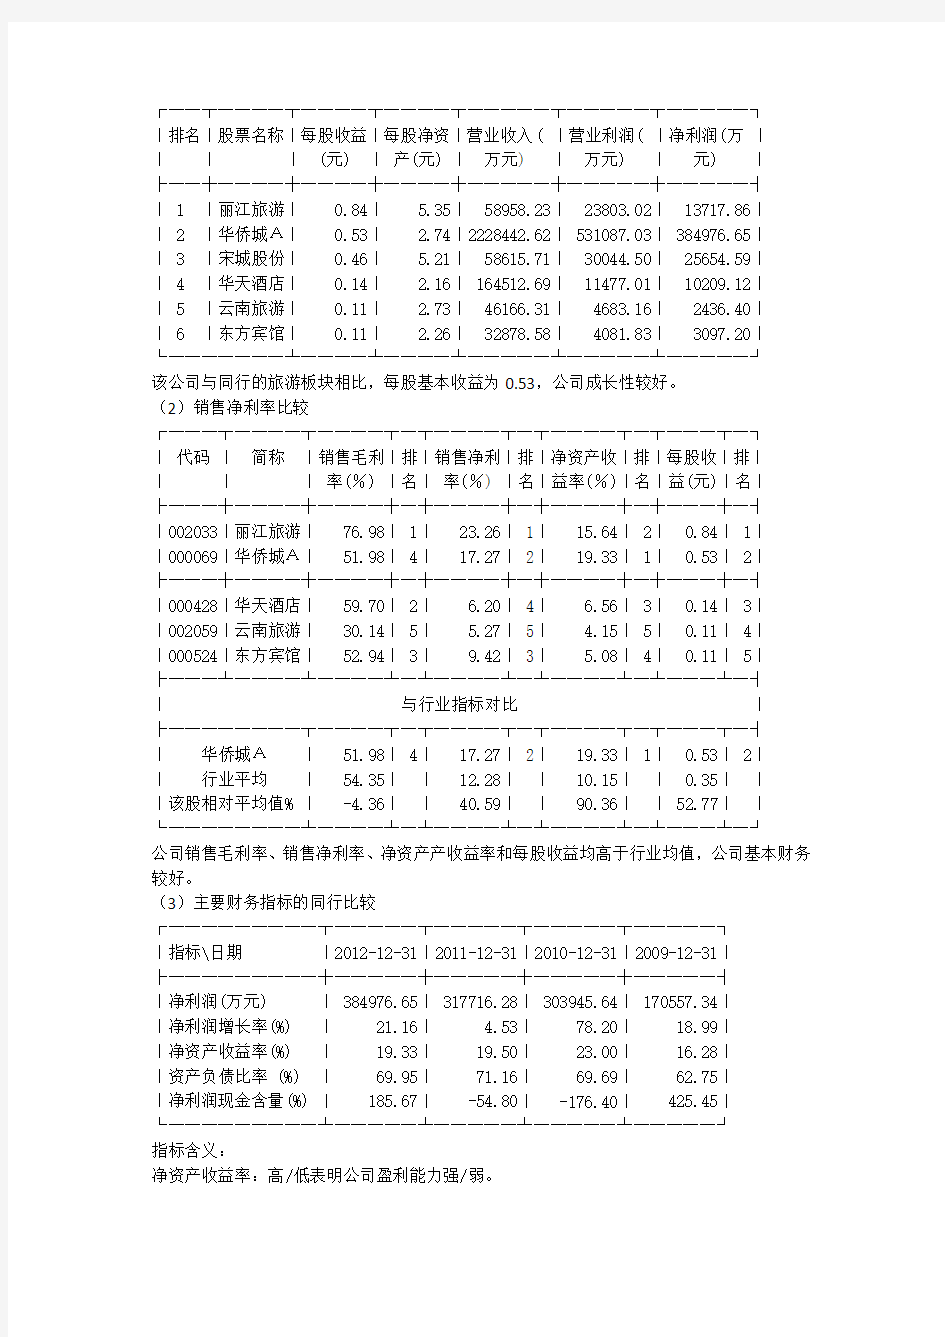 华侨城A(000069)财务报告分析2012年度完整版